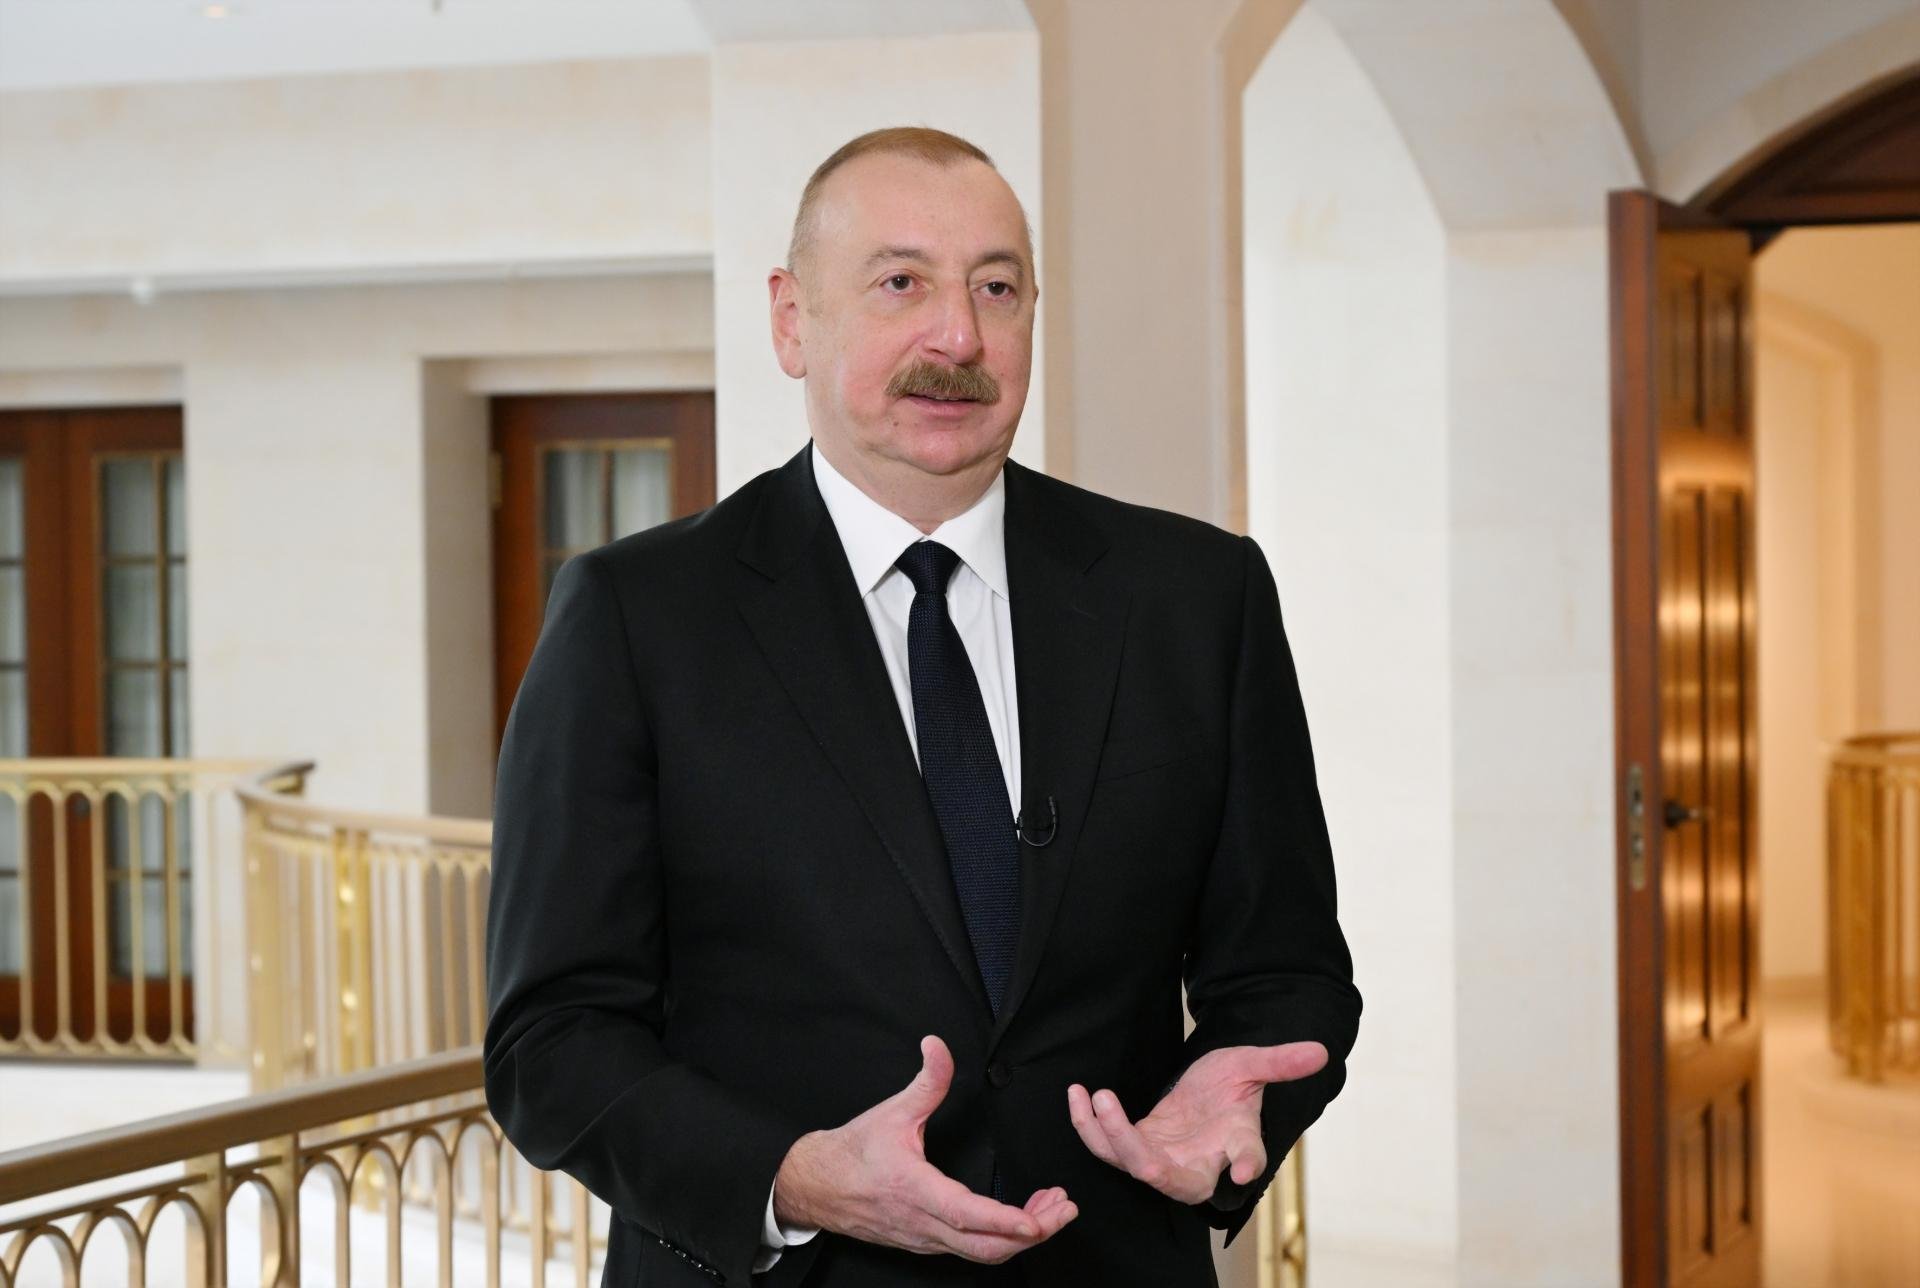 Azərbaycan Prezidenti İlham Əliyev “Euronews” televiziyasına müsahibə verib